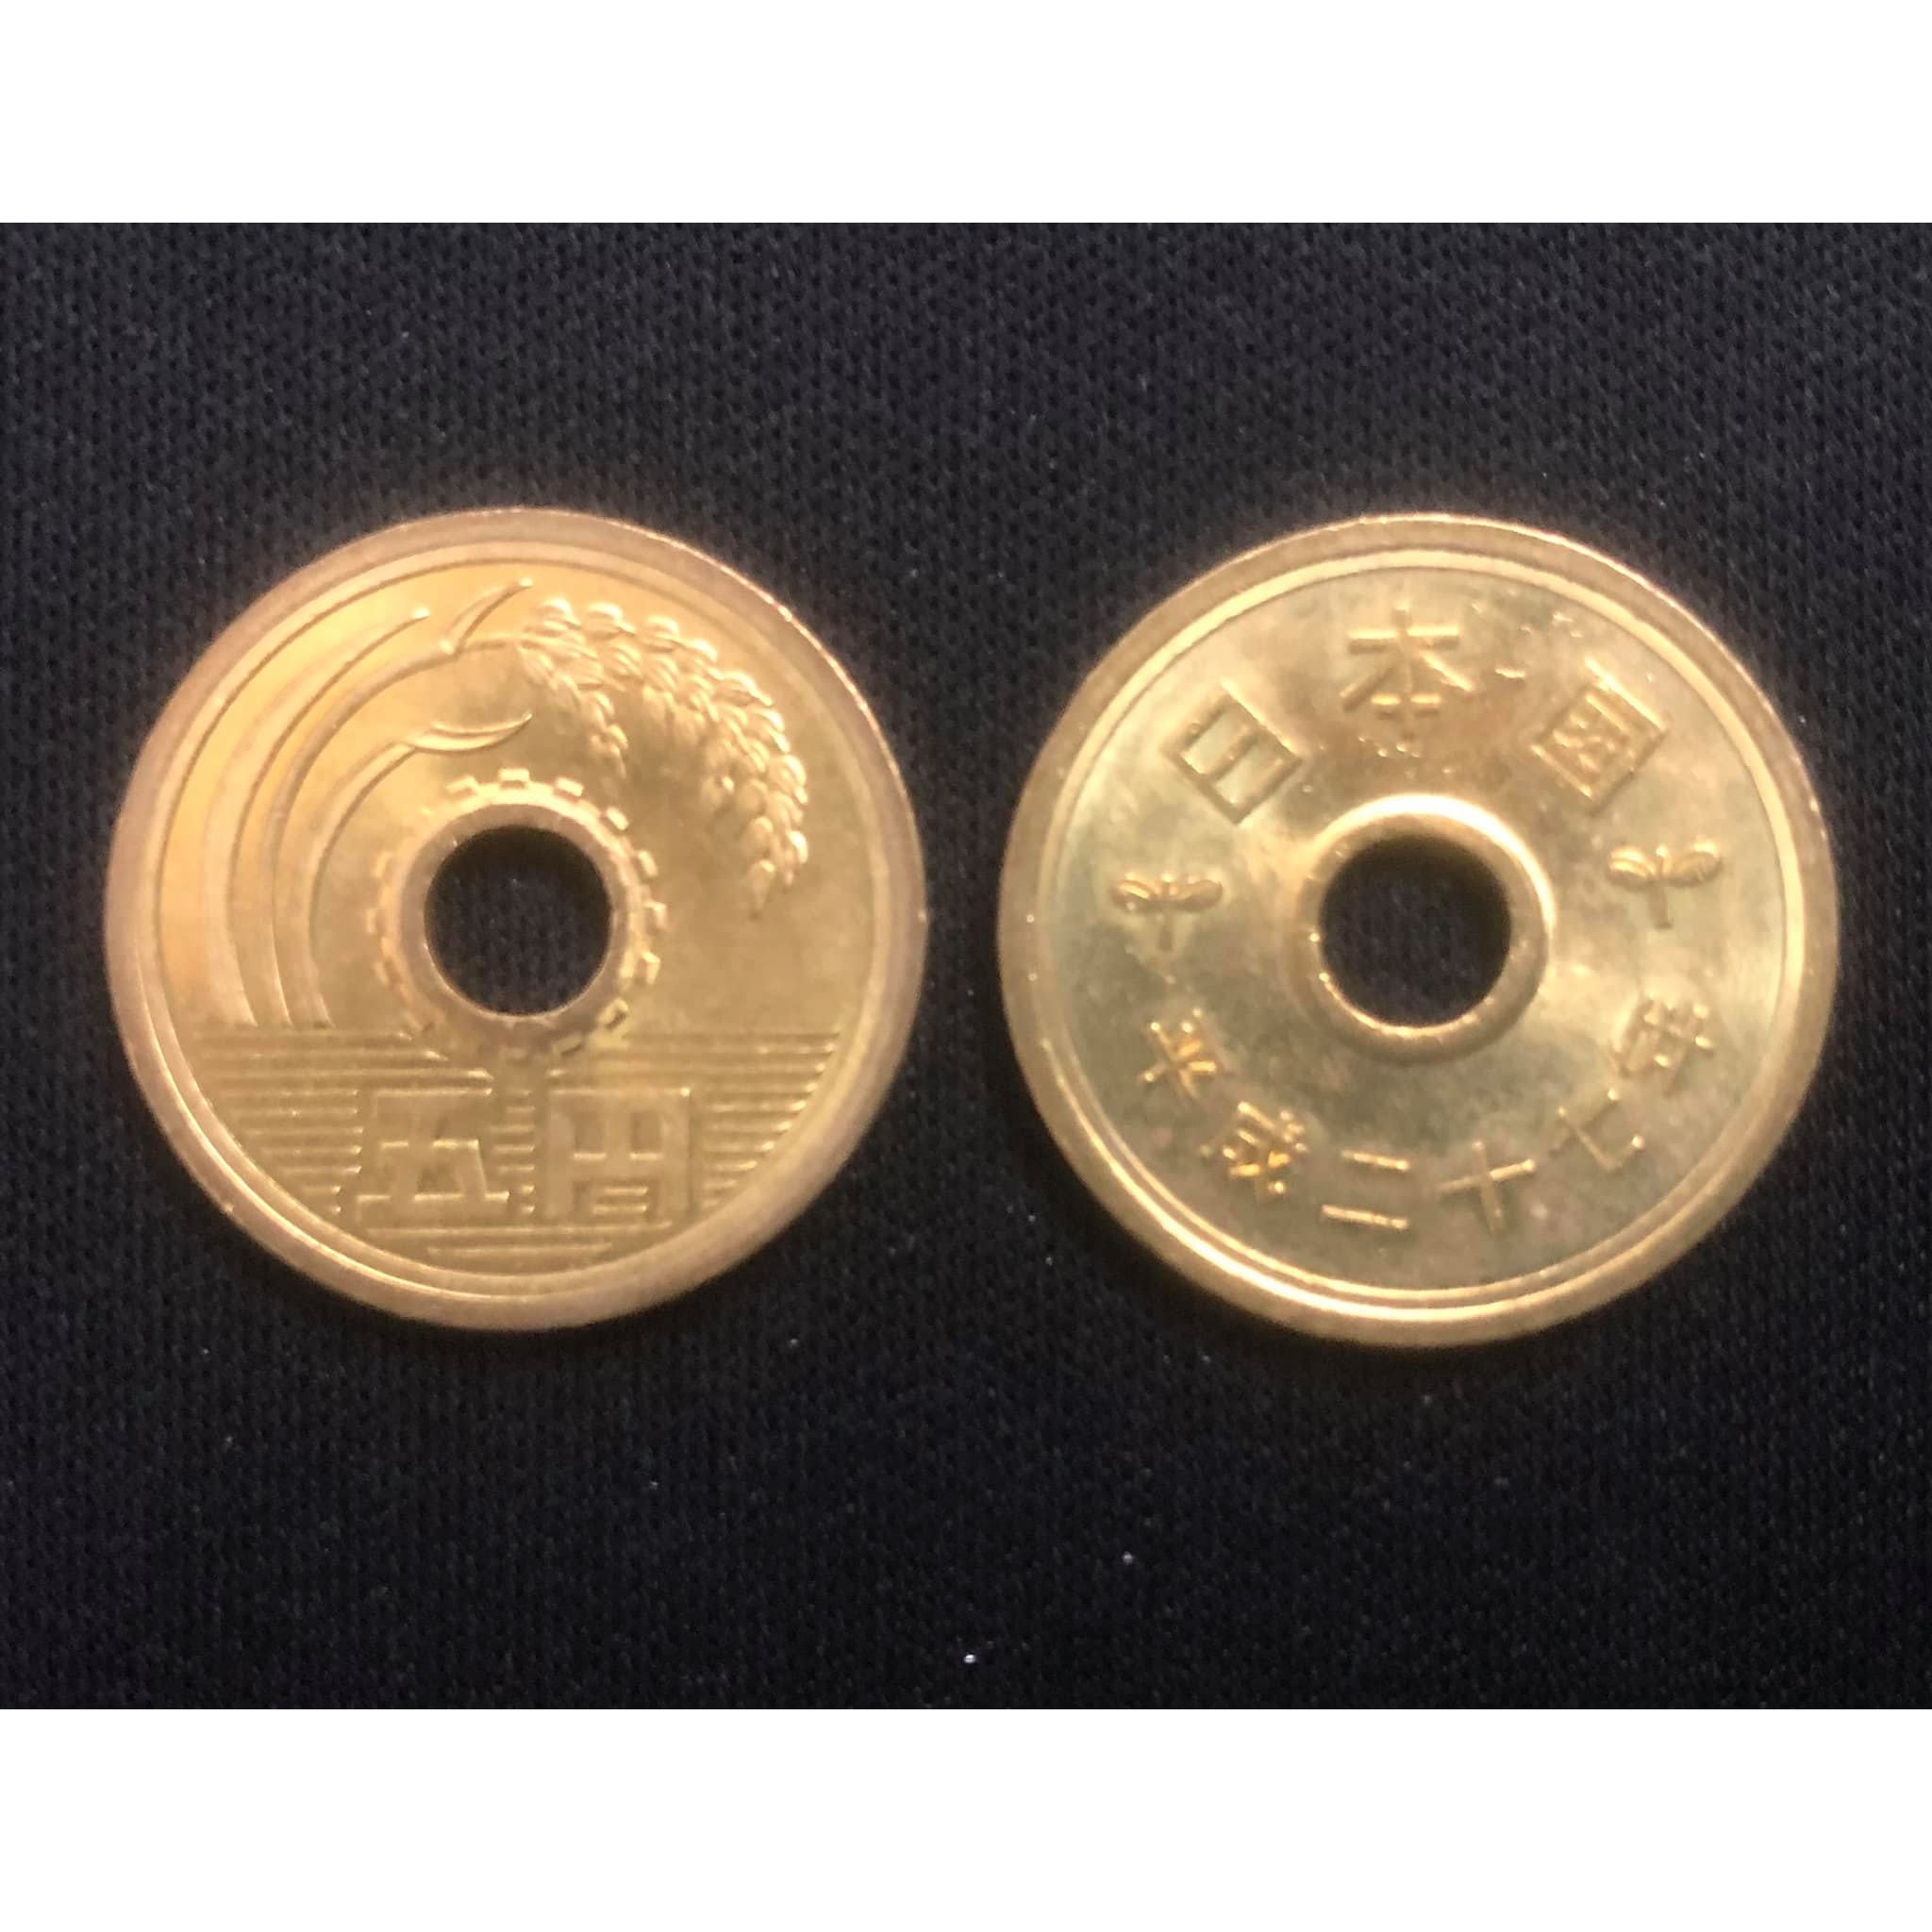 Xu 5 yên Nhật Bản Mới, Đẹp như hình, một trong những đồng xu mang lại may mắn